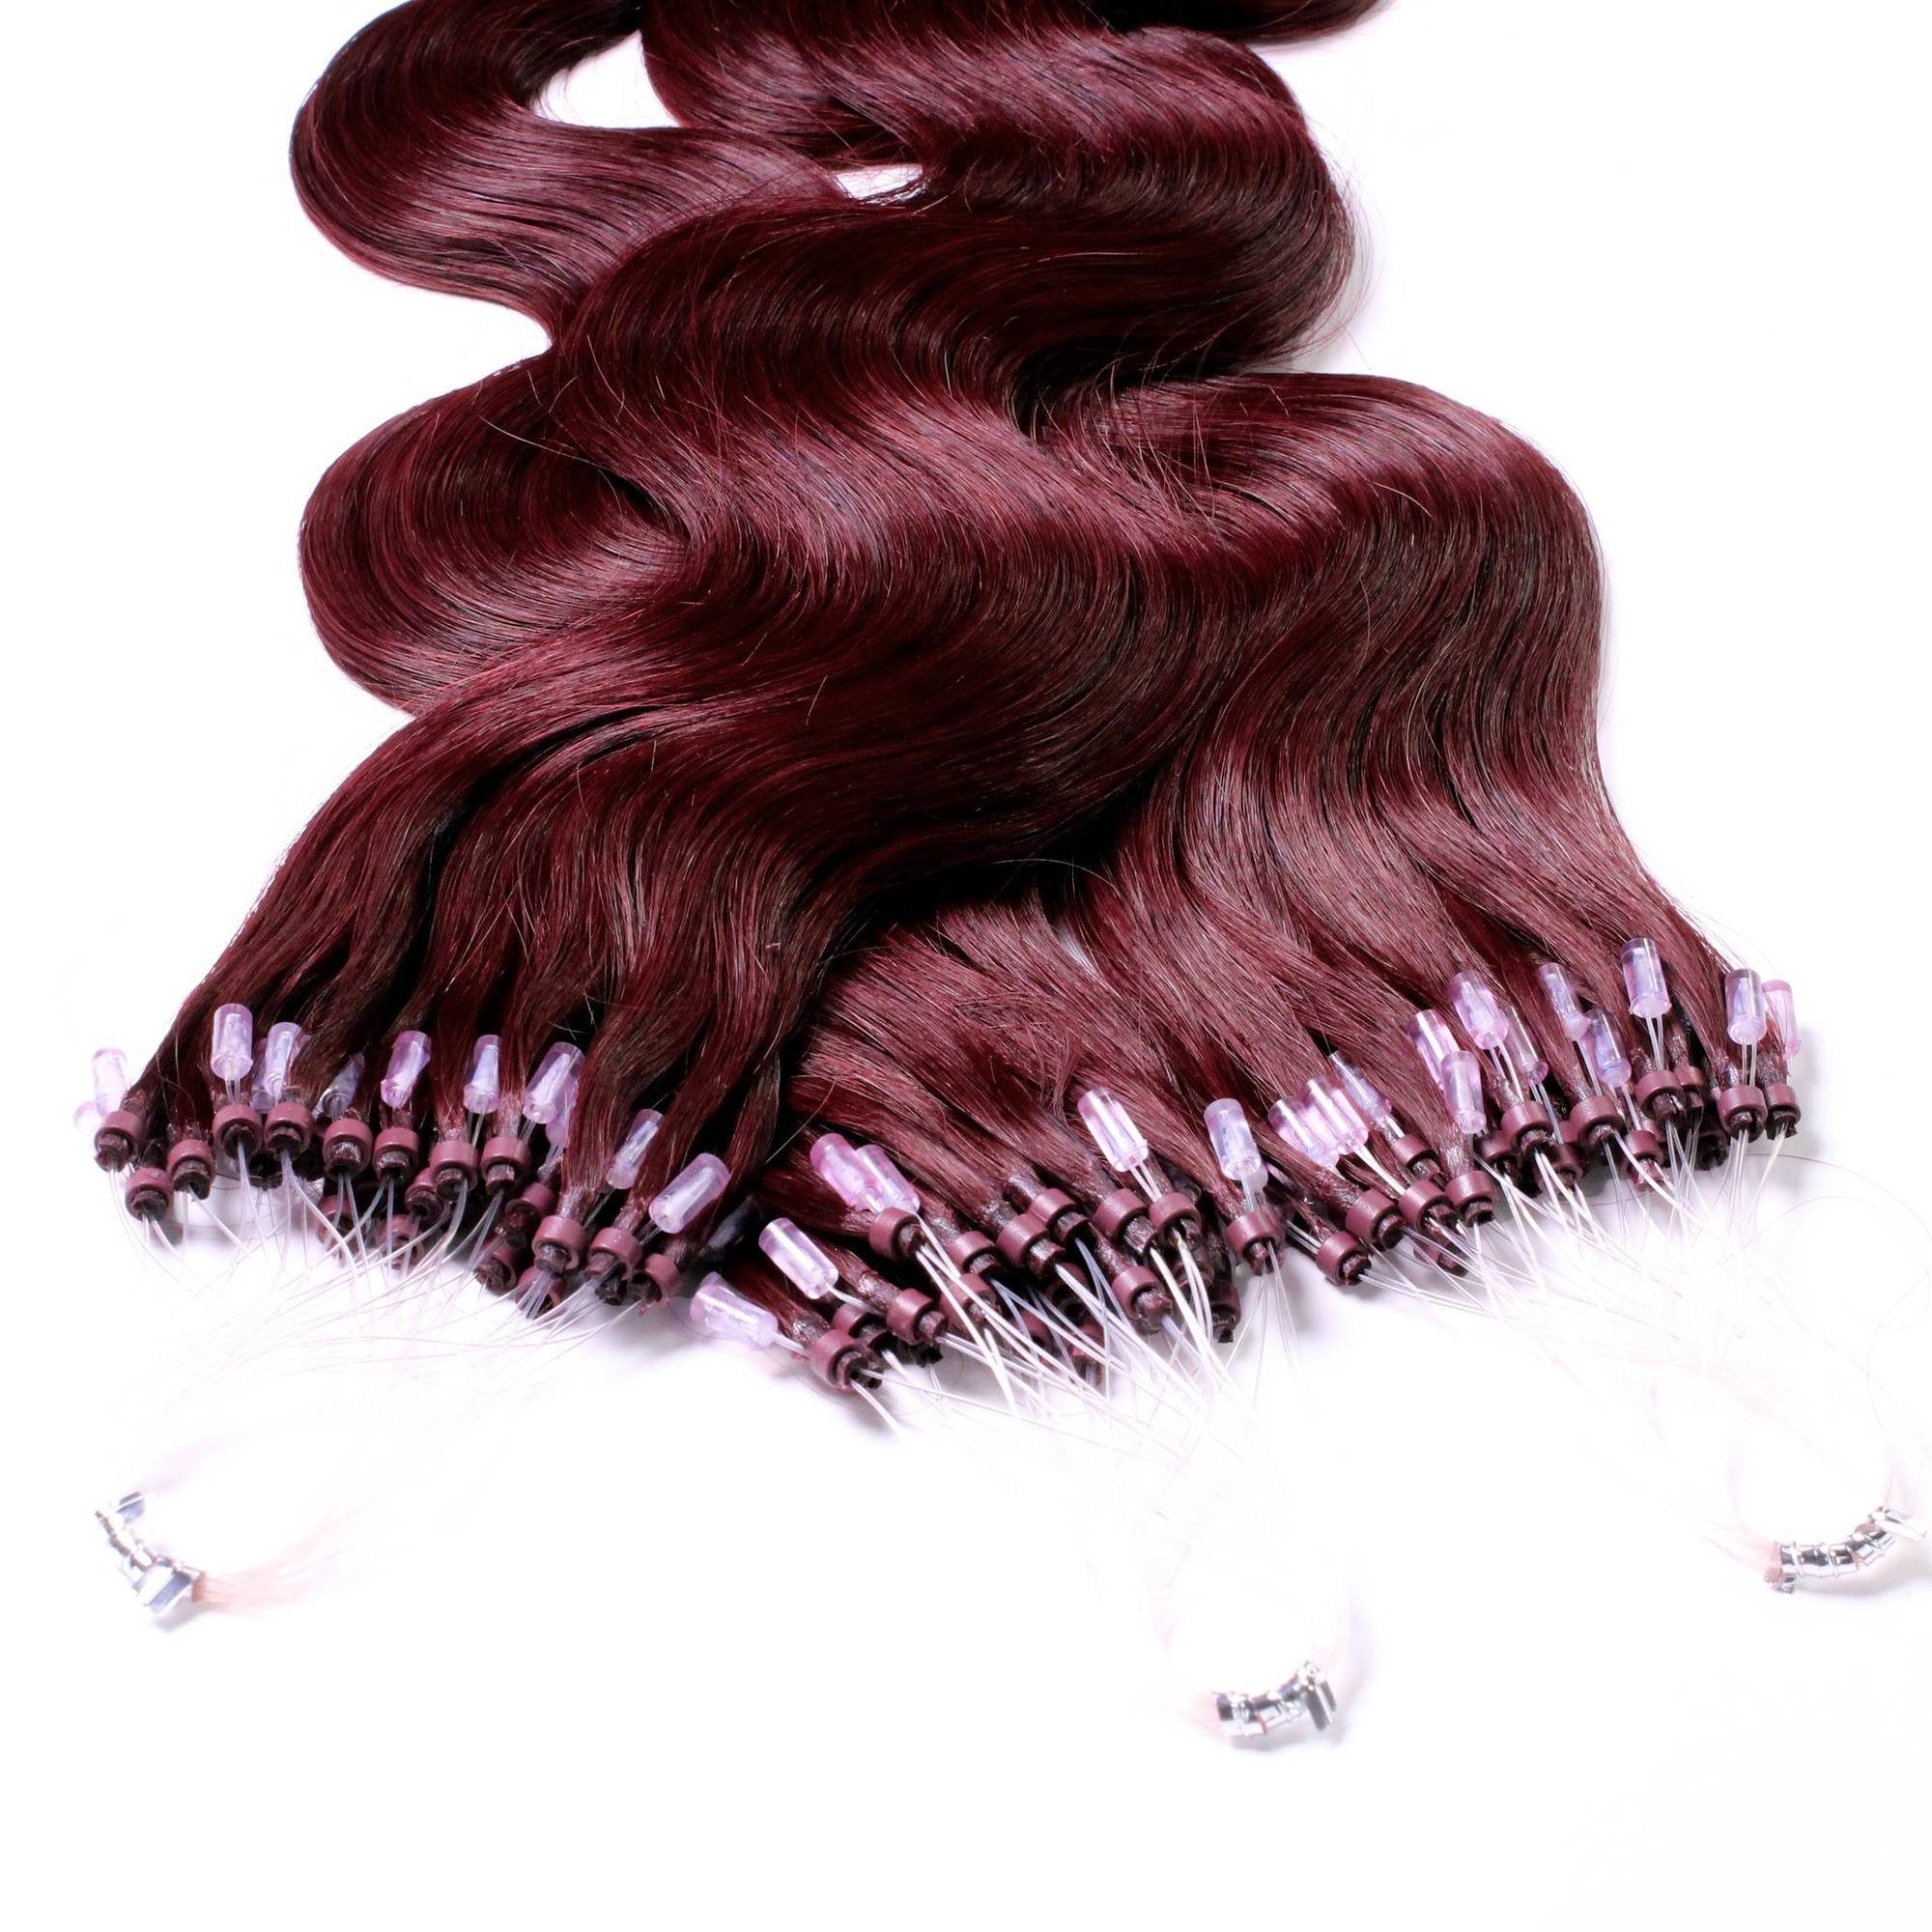 Violett 60cm hair2heart 0.5g - Microring Hellbraun Echthaar-Extension #55/66 gewellt Loops